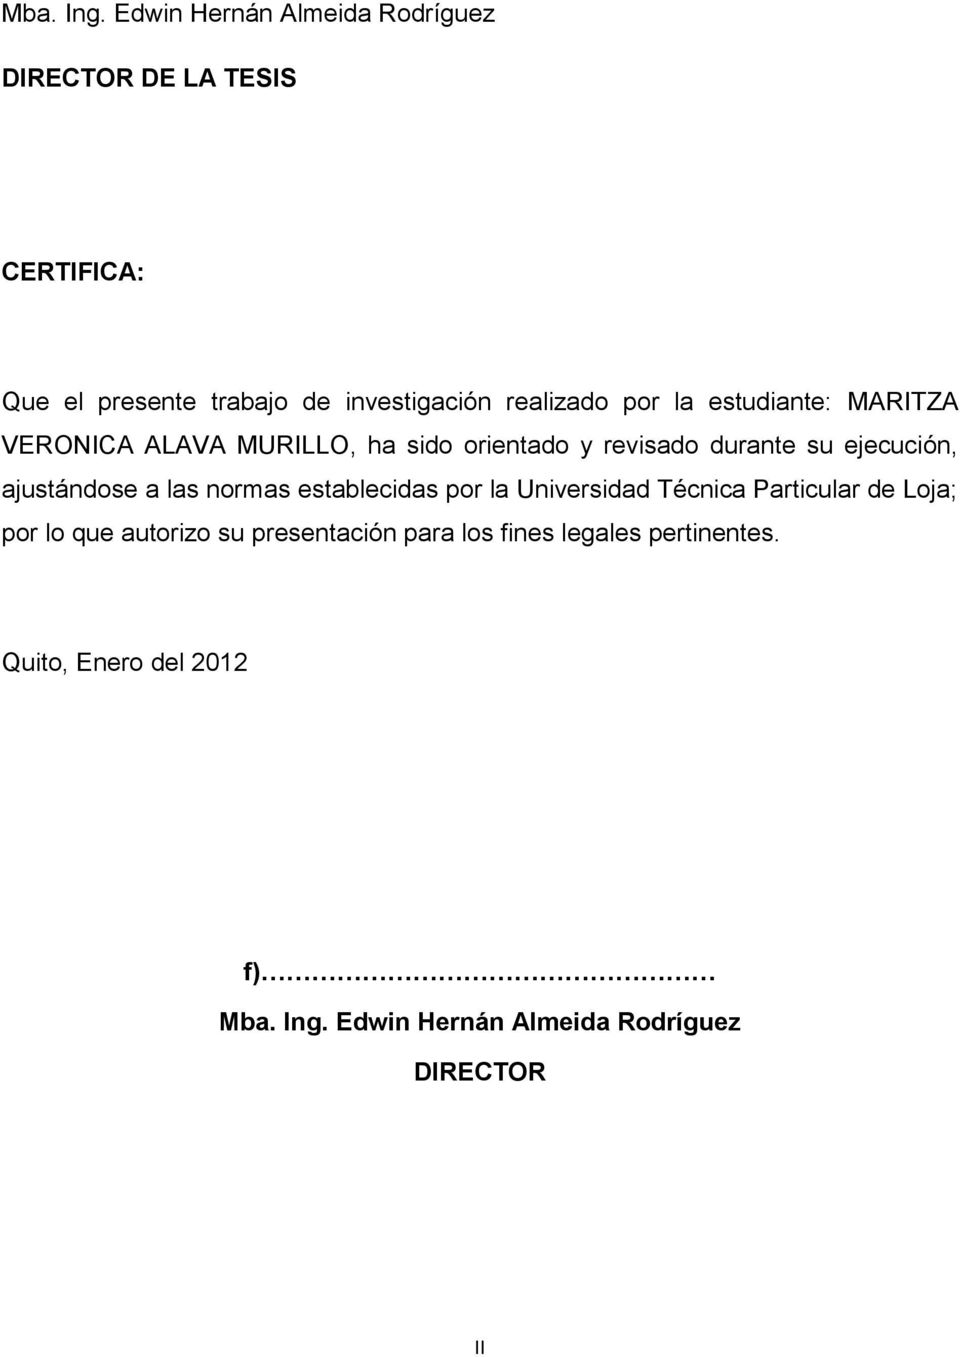 por la estudiante: MARITZA VERONICA ALAVA MURILLO, ha sido orientado y revisado durante su ejecución, ajustándose